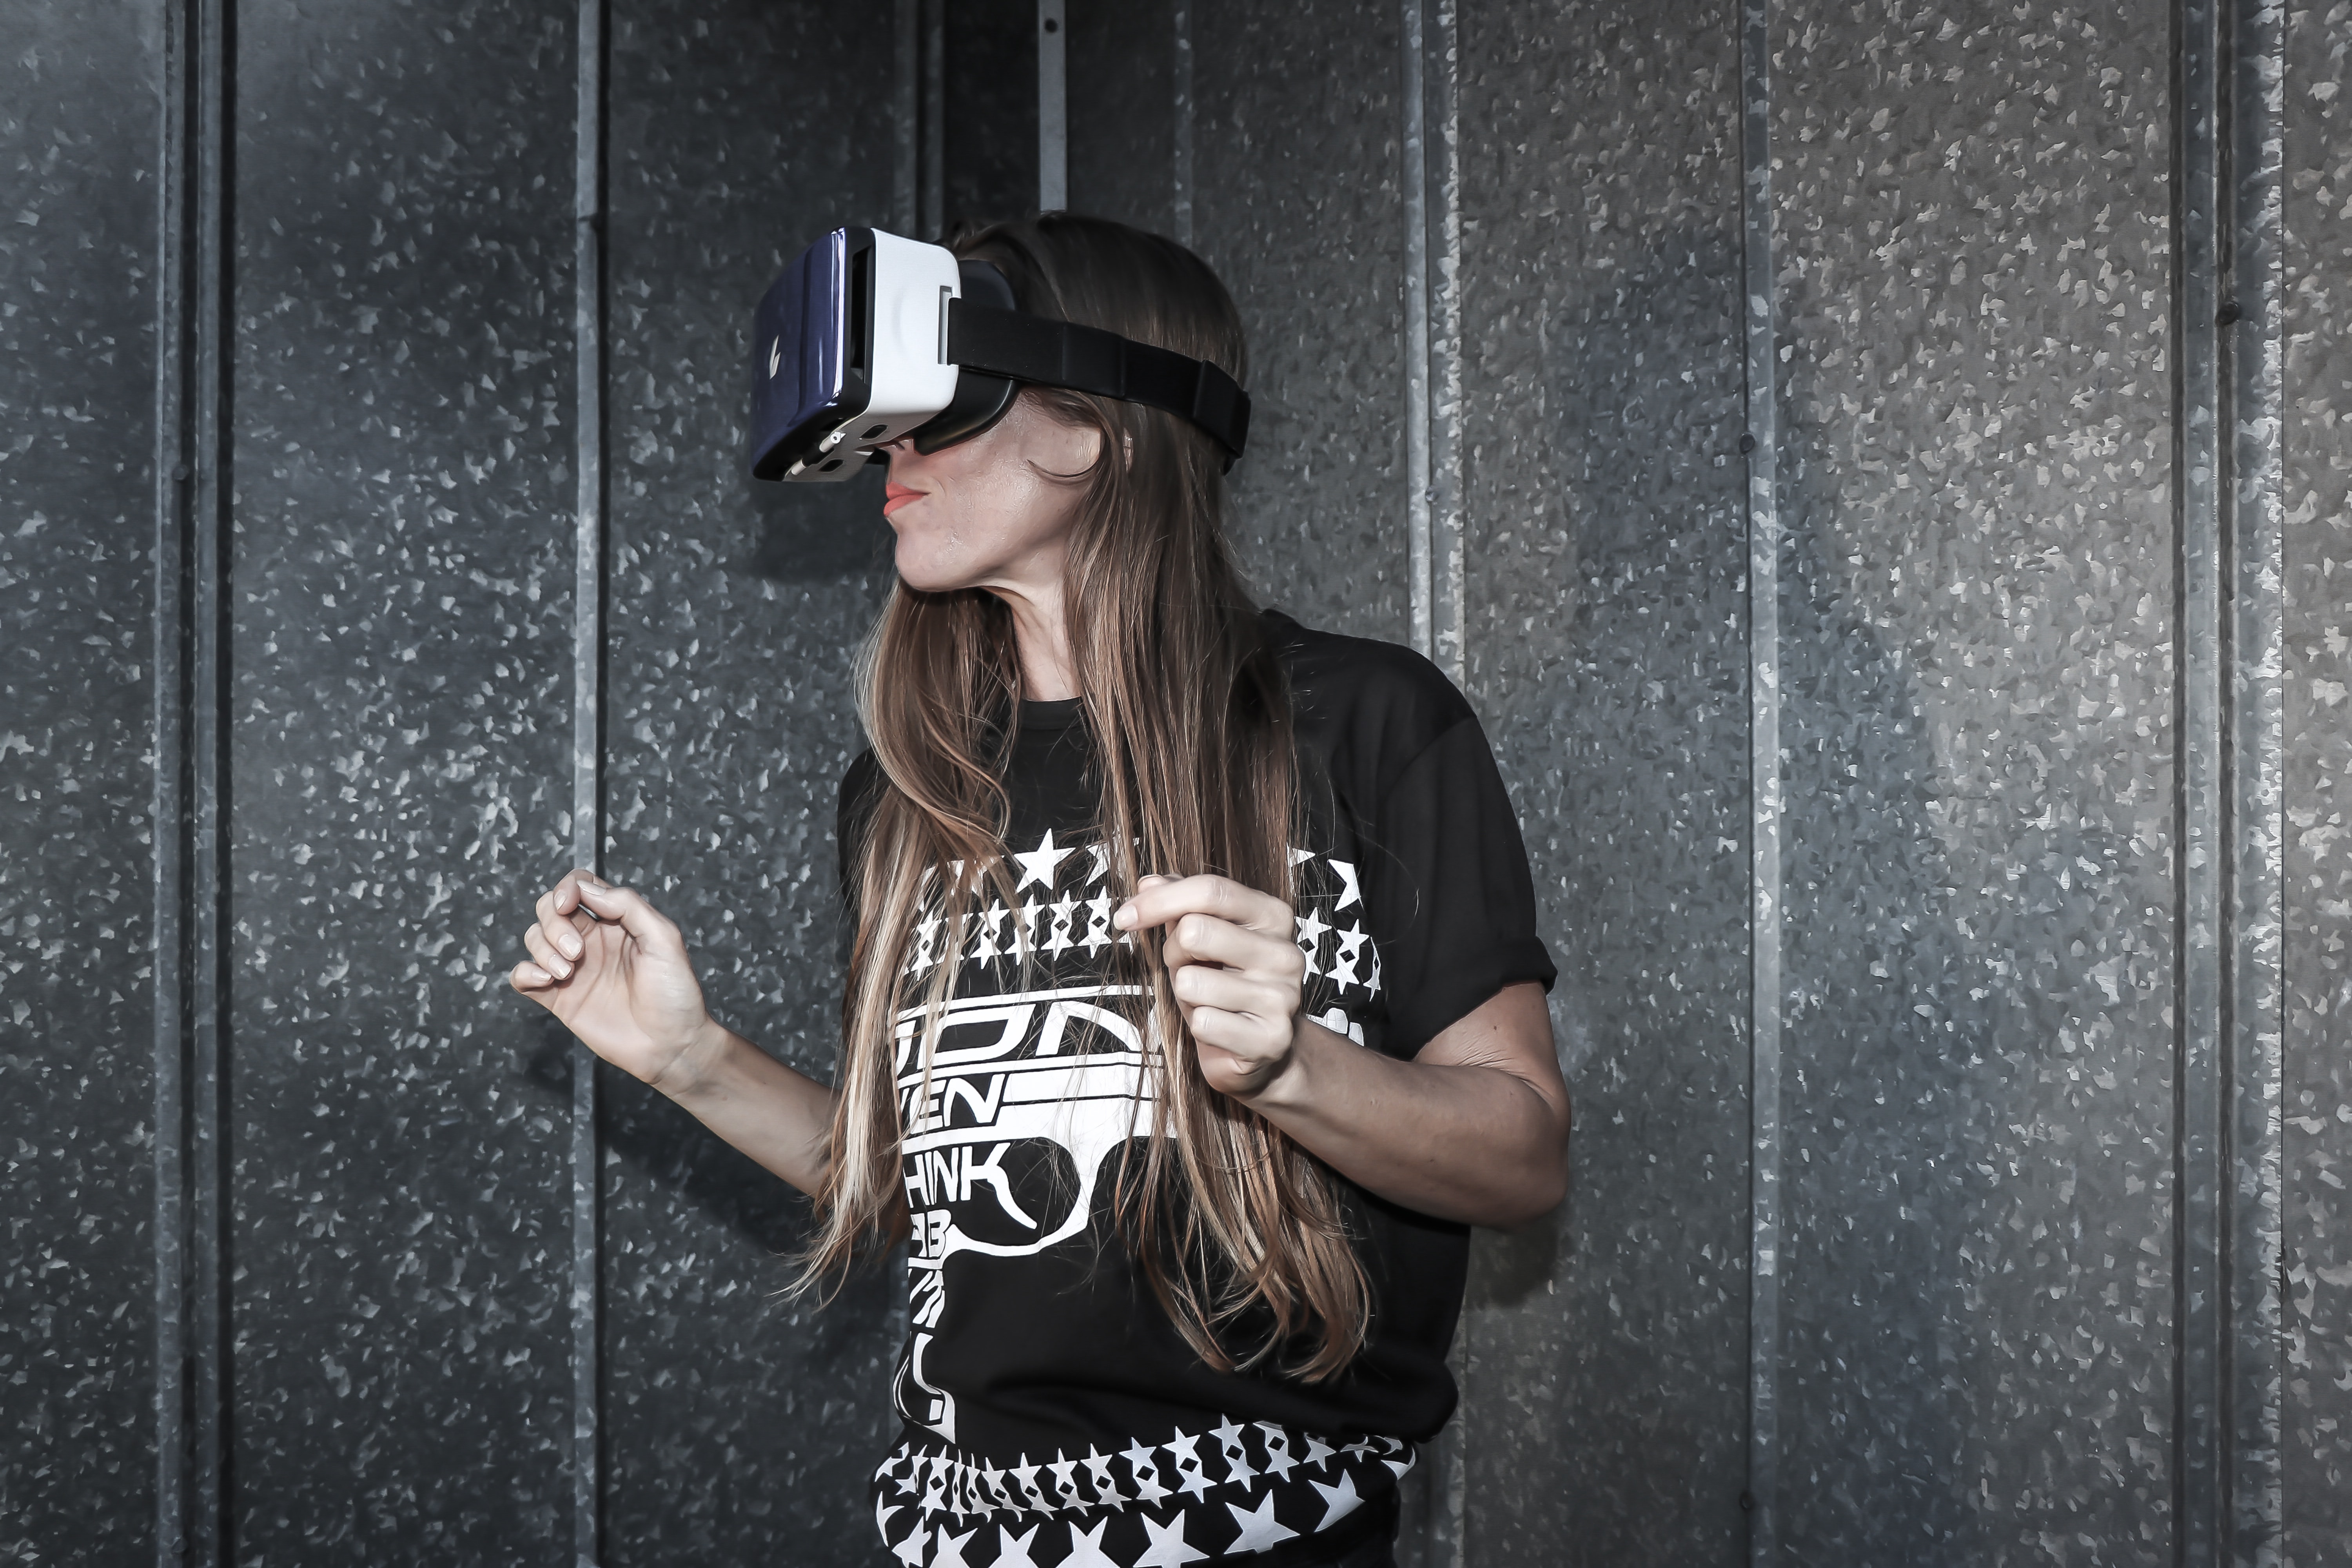 wearing virtual reality